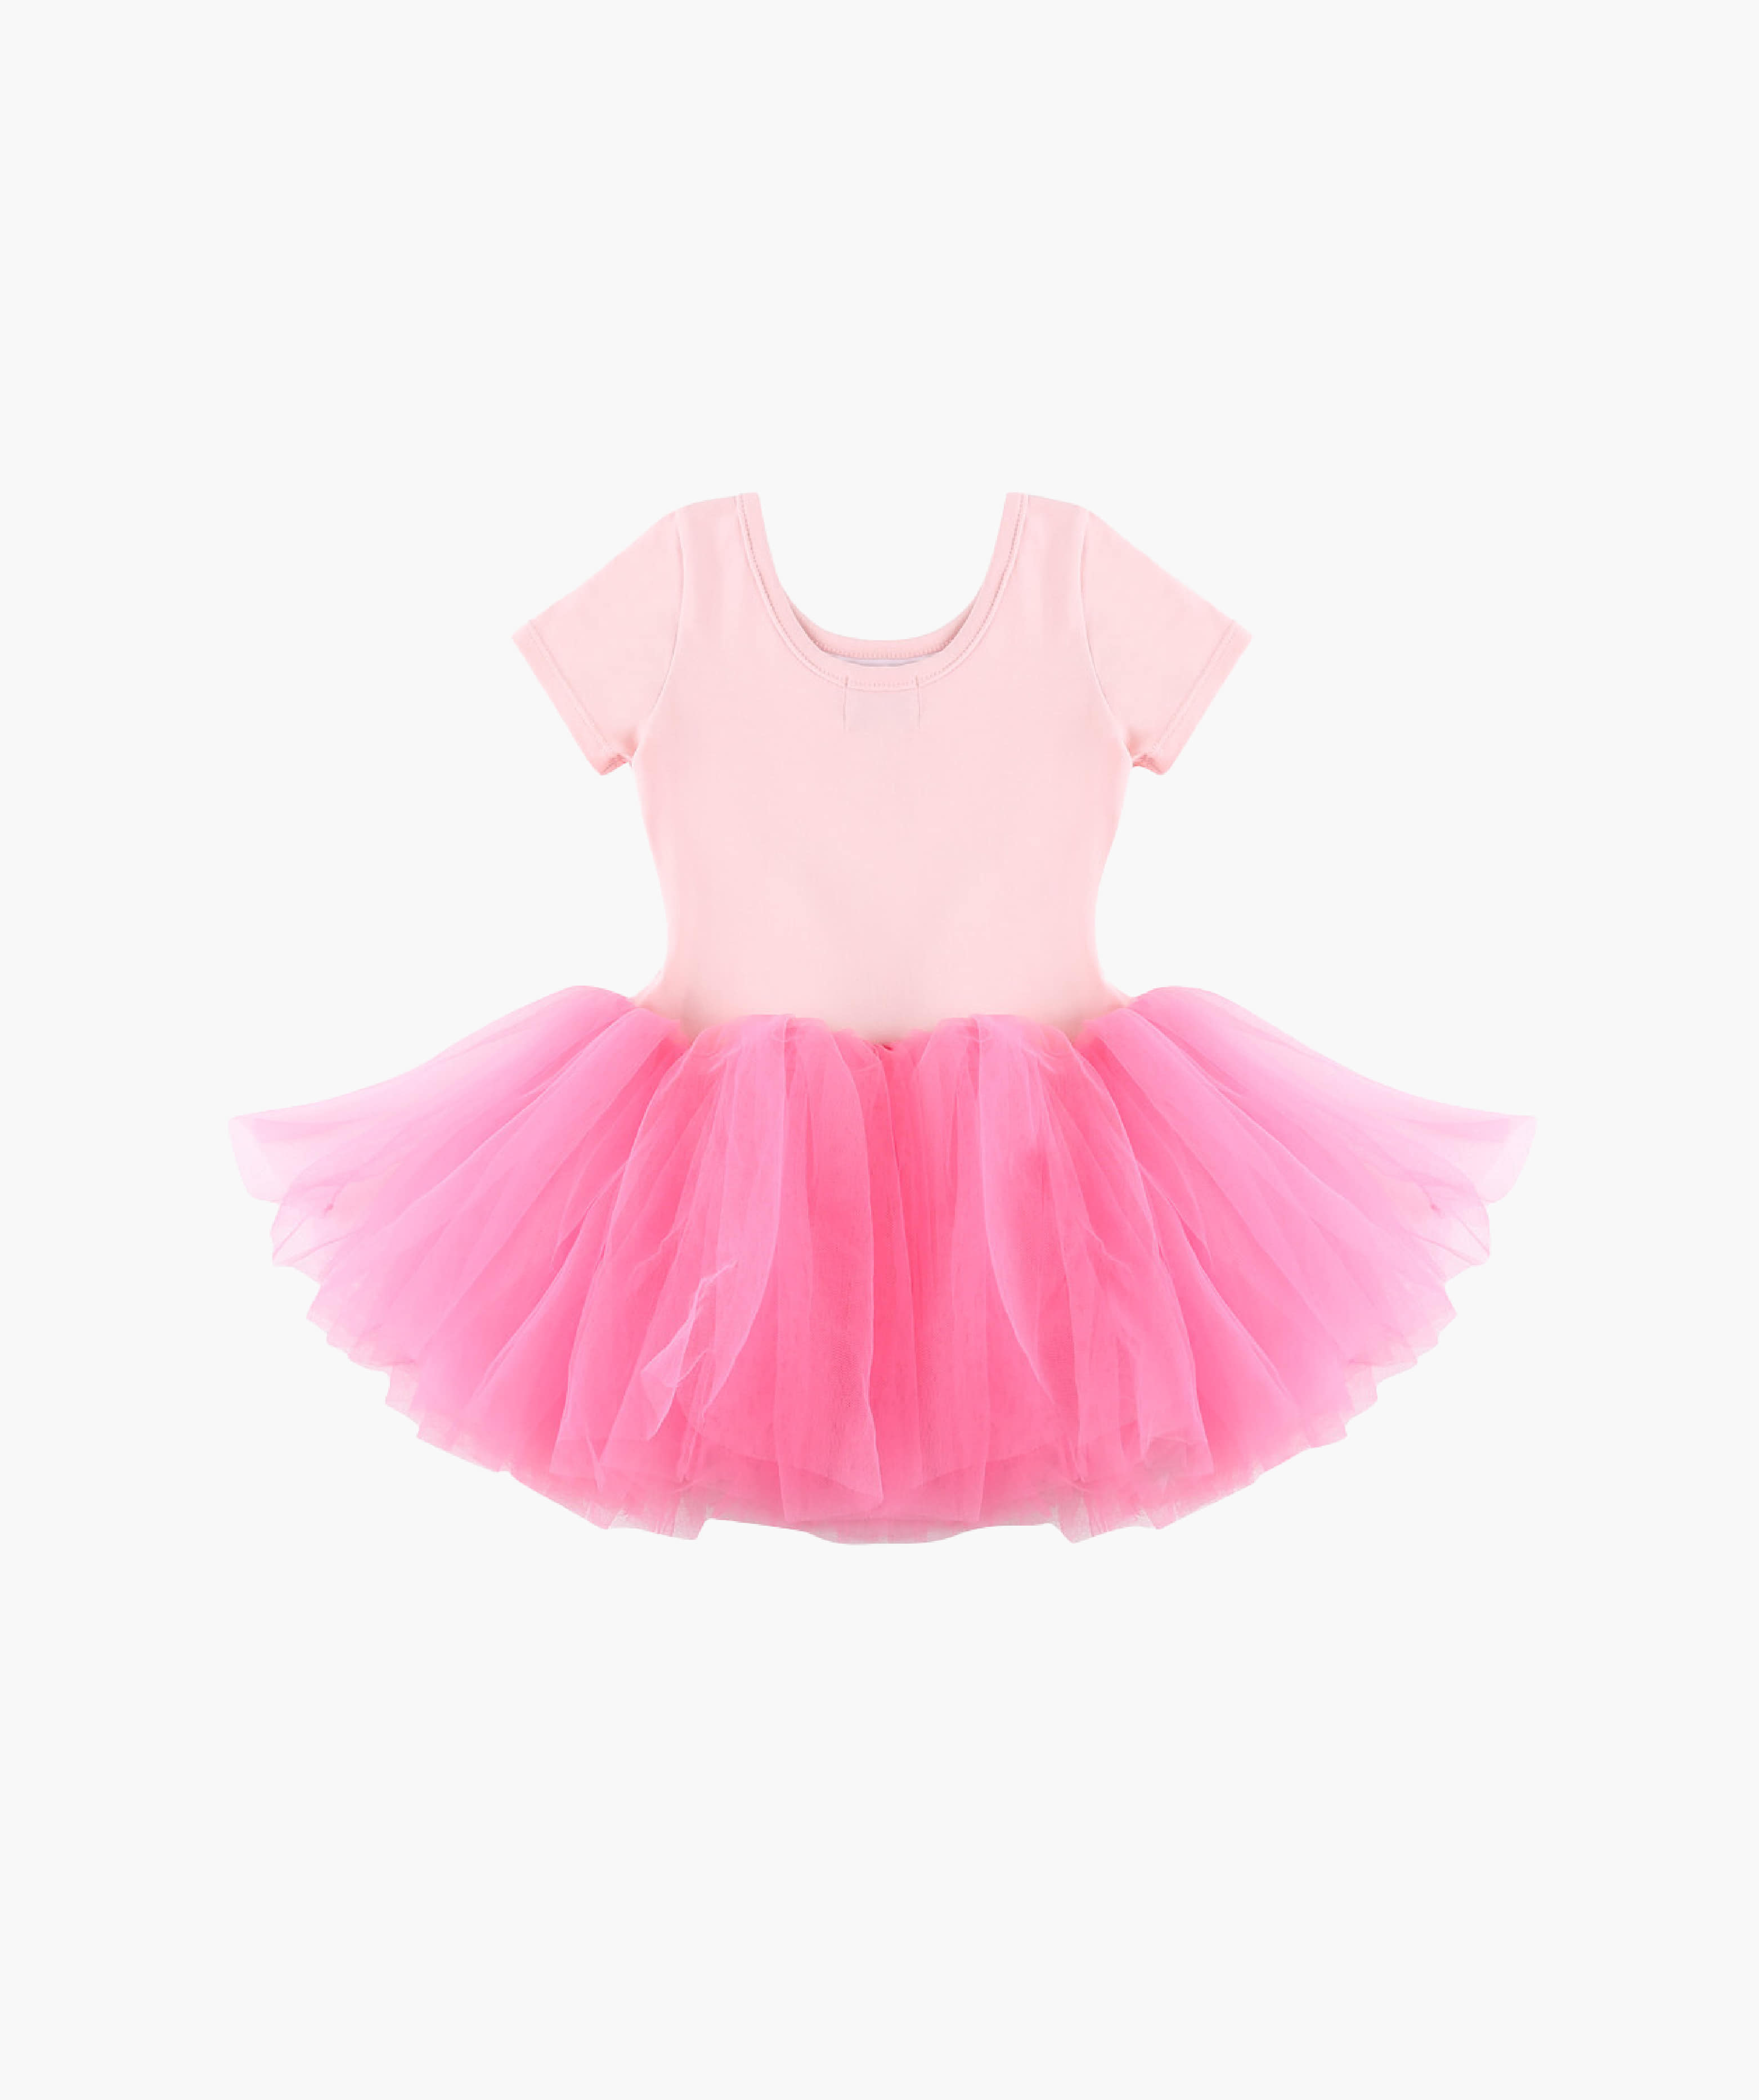 Snap Ruffle Tutu Dress_Pink